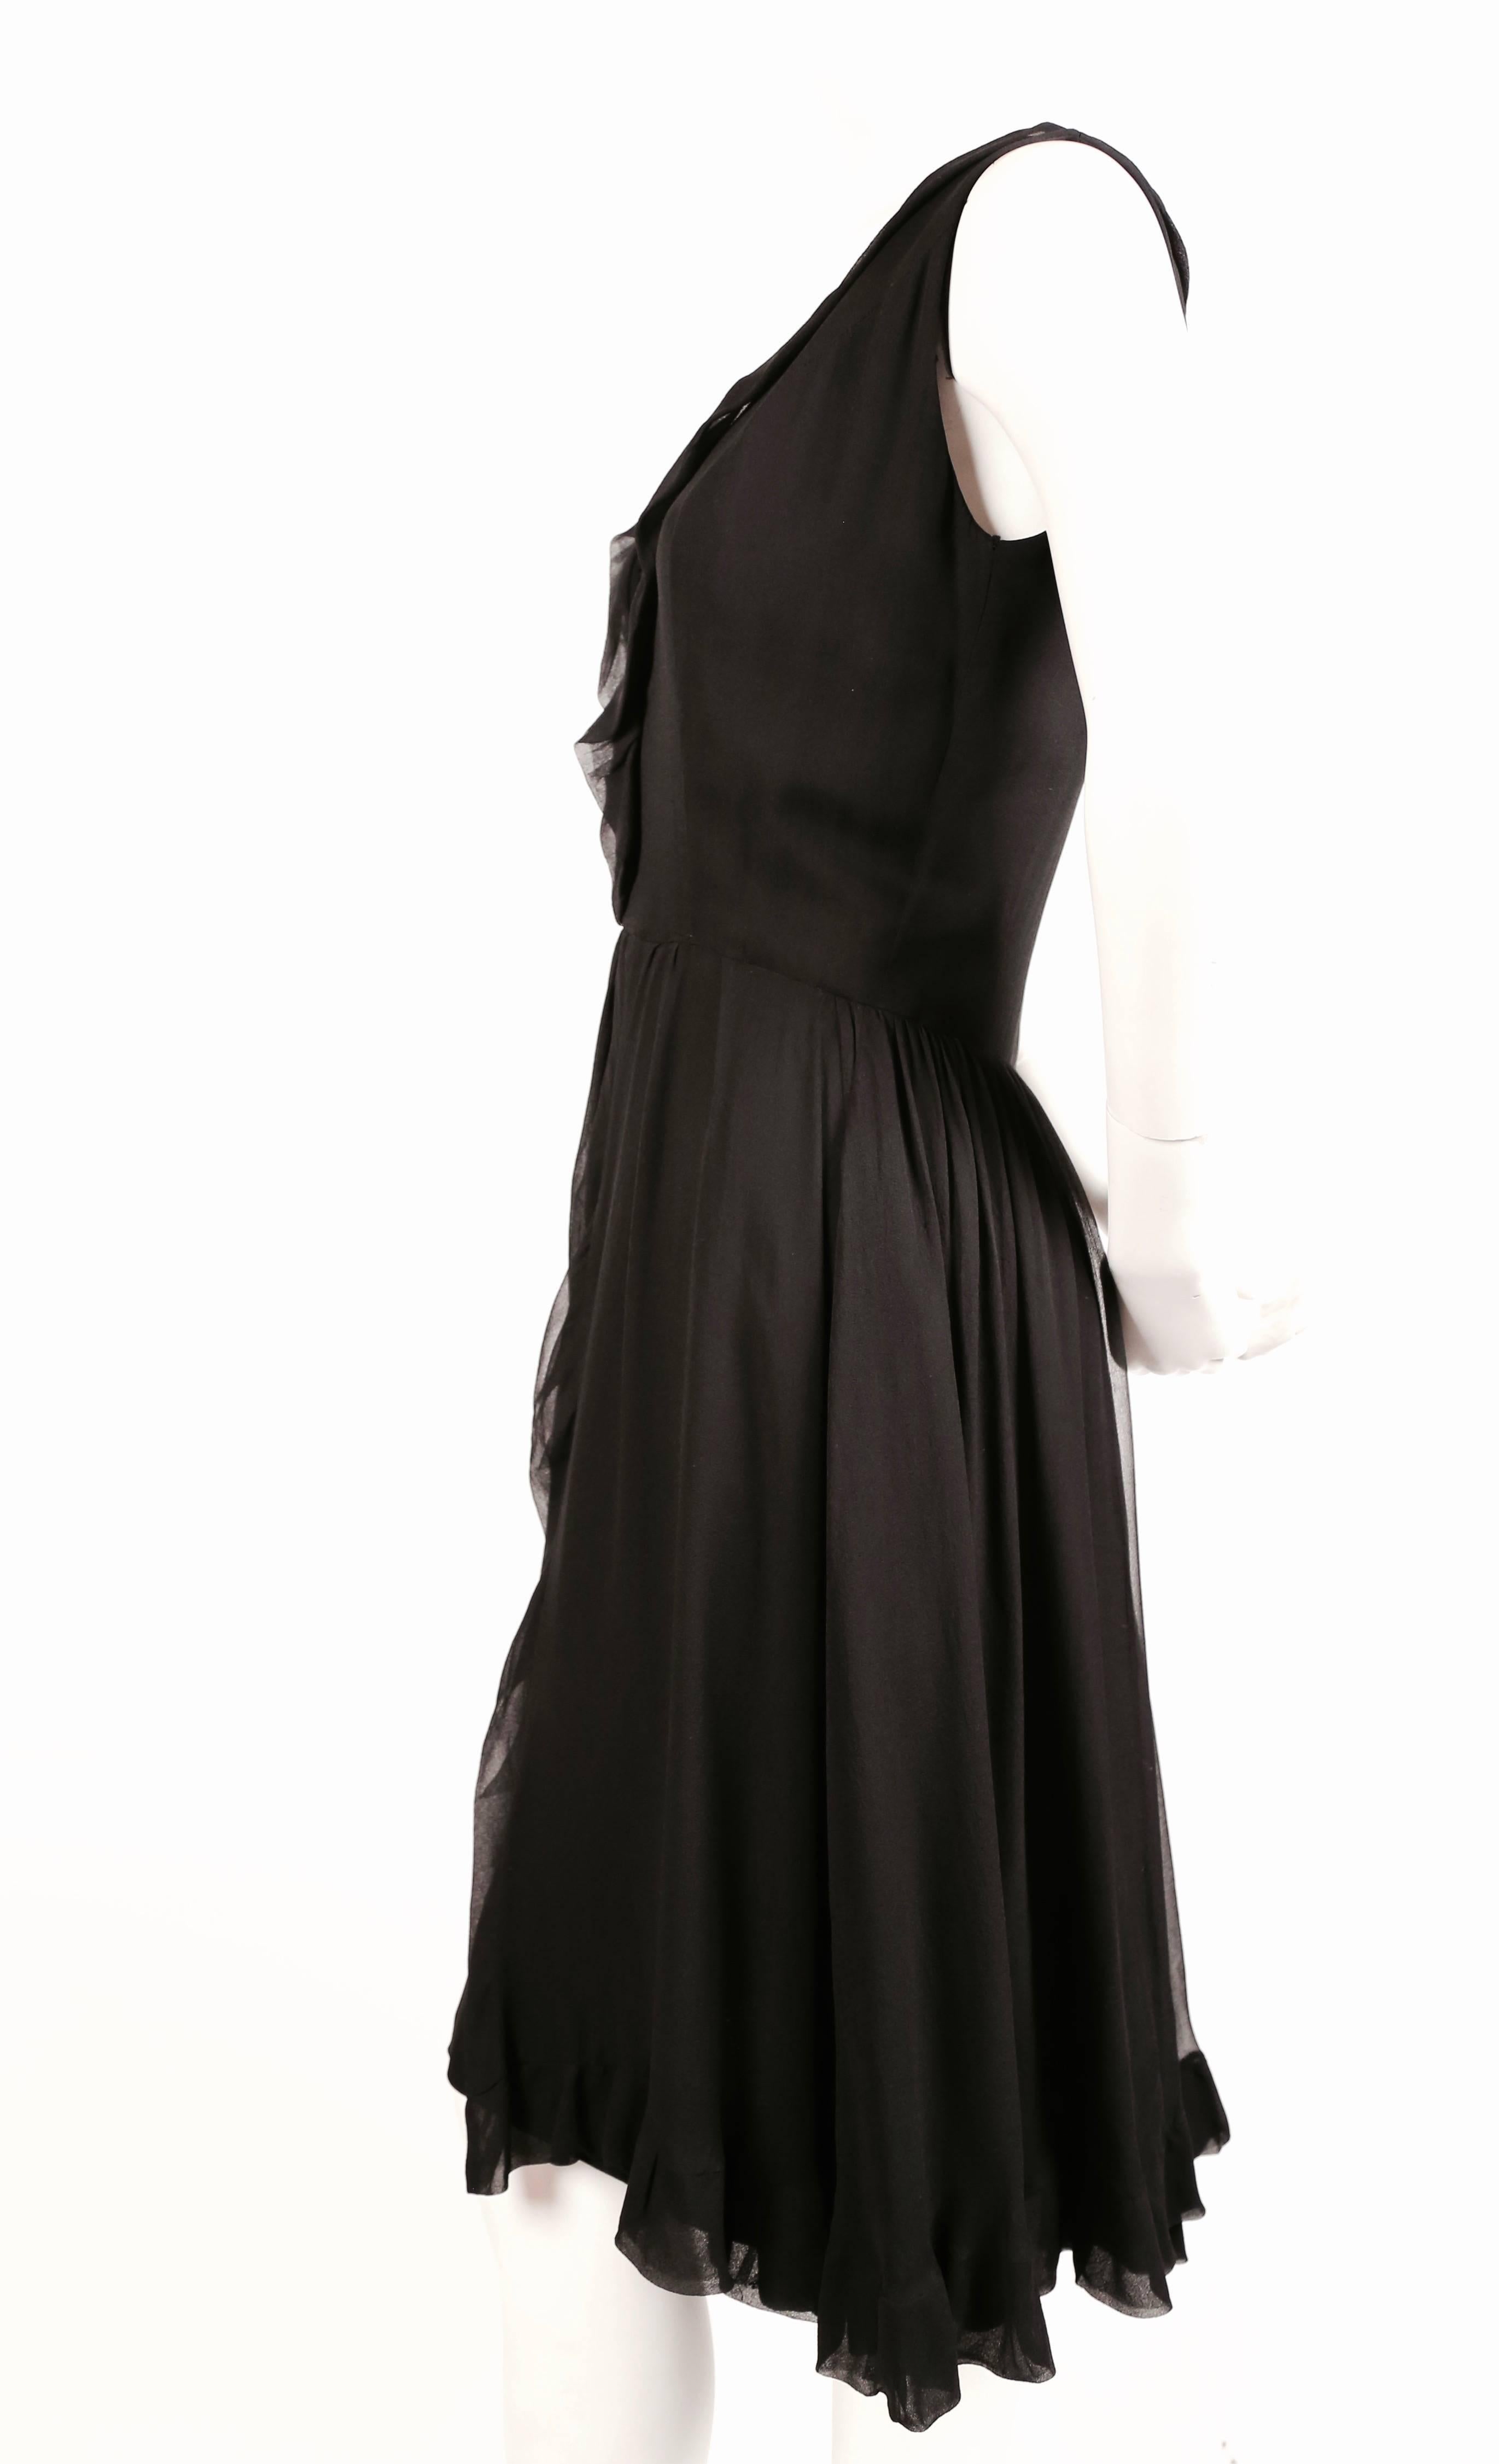 Schwarzes Seidenkleid mit durchsichtigem Mousseline-Overlay, entworfen von Jacques Heim, hergestellt von Maria carine aus den 1960er Jahren. Passt einer US 4 oder 6. Ungefähre Maße: Büste 35-36